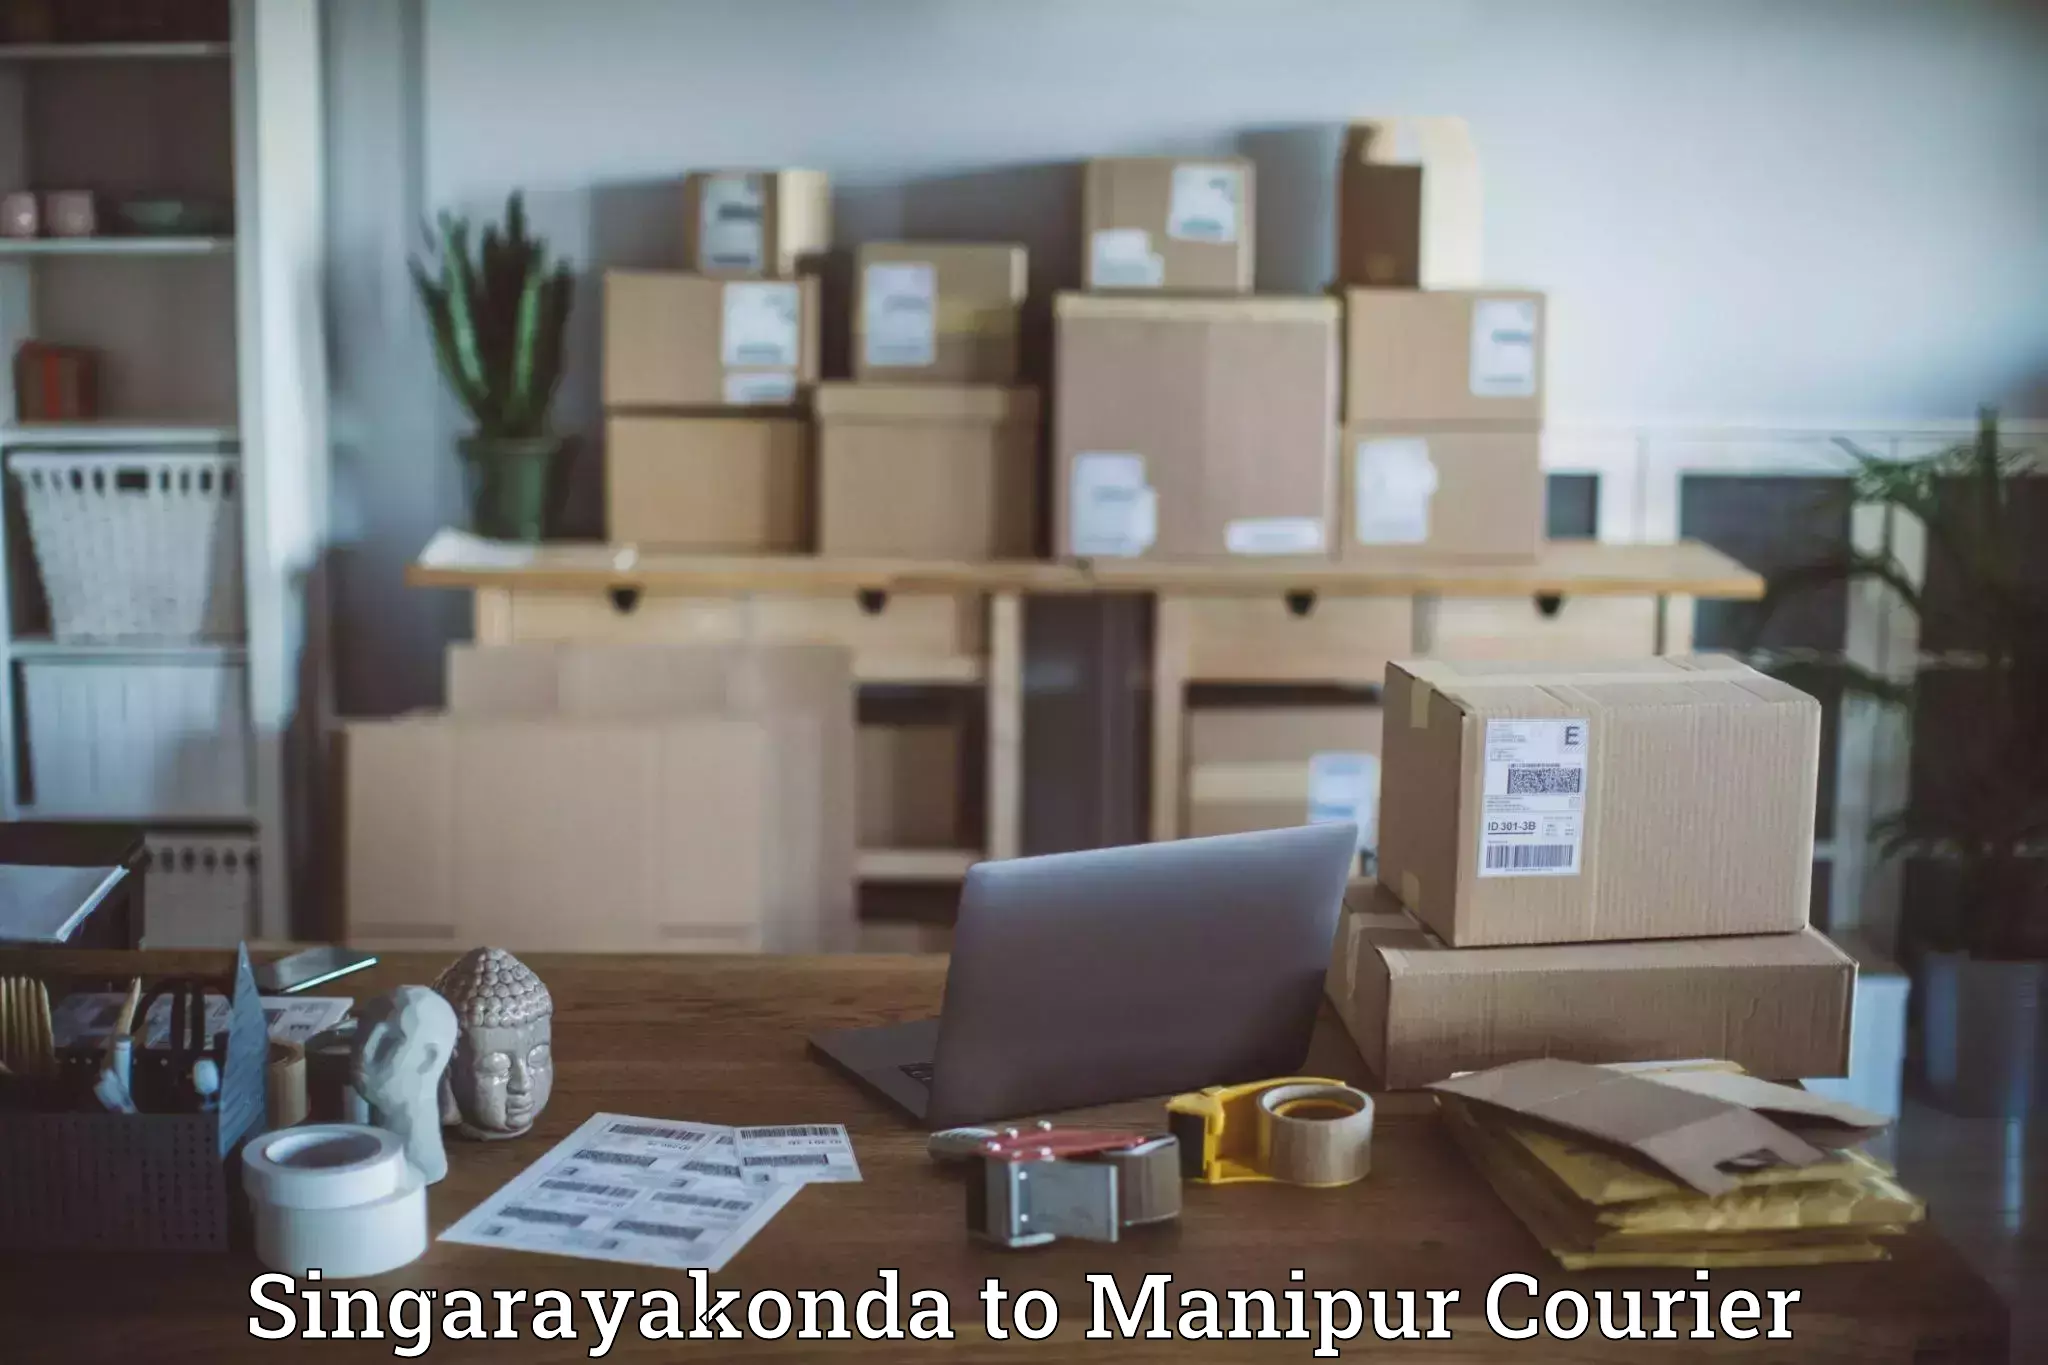 Smart parcel tracking Singarayakonda to Manipur